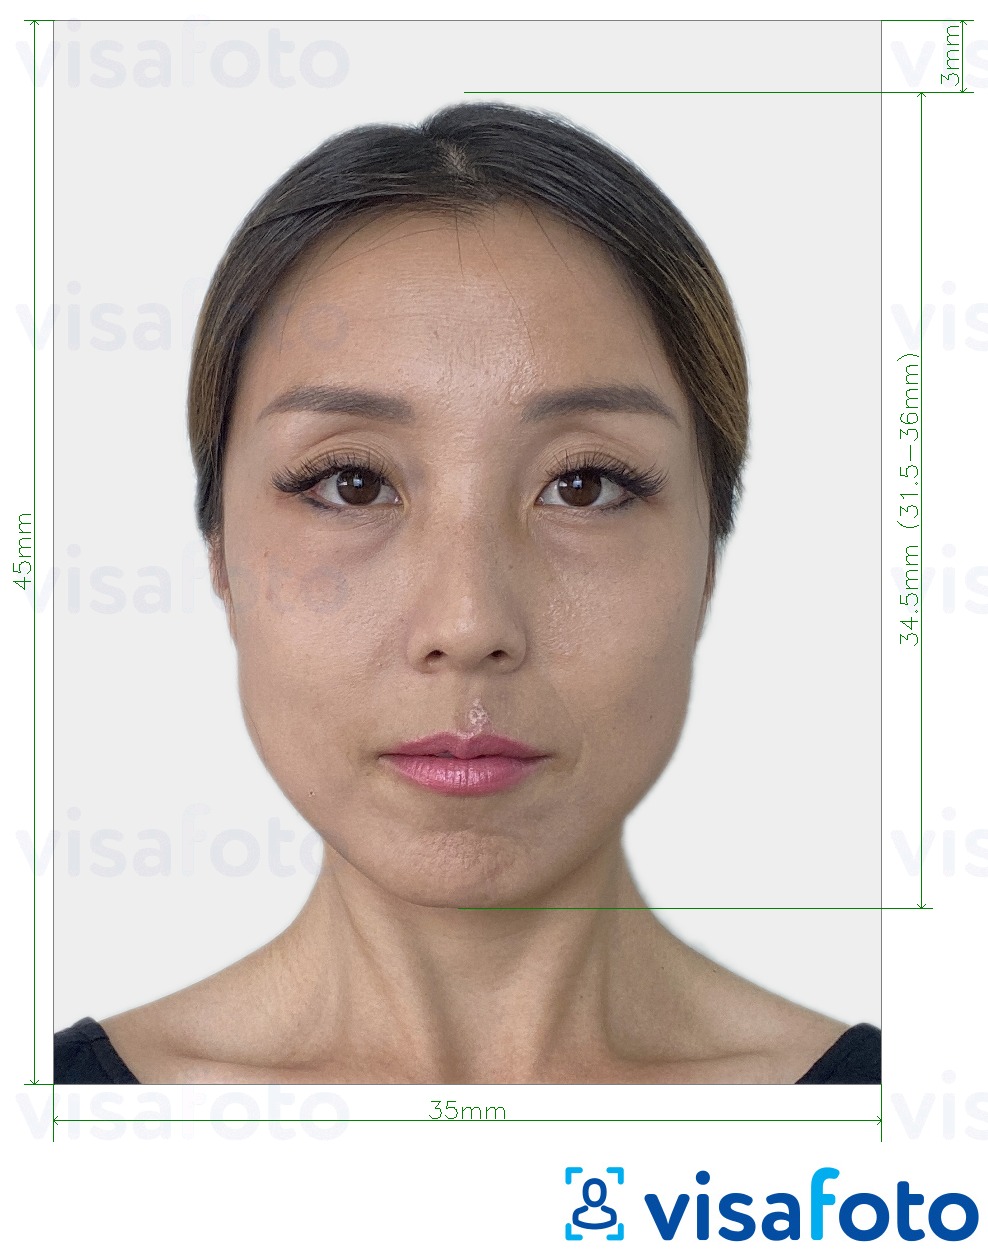 Contoh dari foto untuk Korea Selatan Visa 35x45 mm (3,5x4,5 cm) dengan ukuran spesifikasi yang tepat